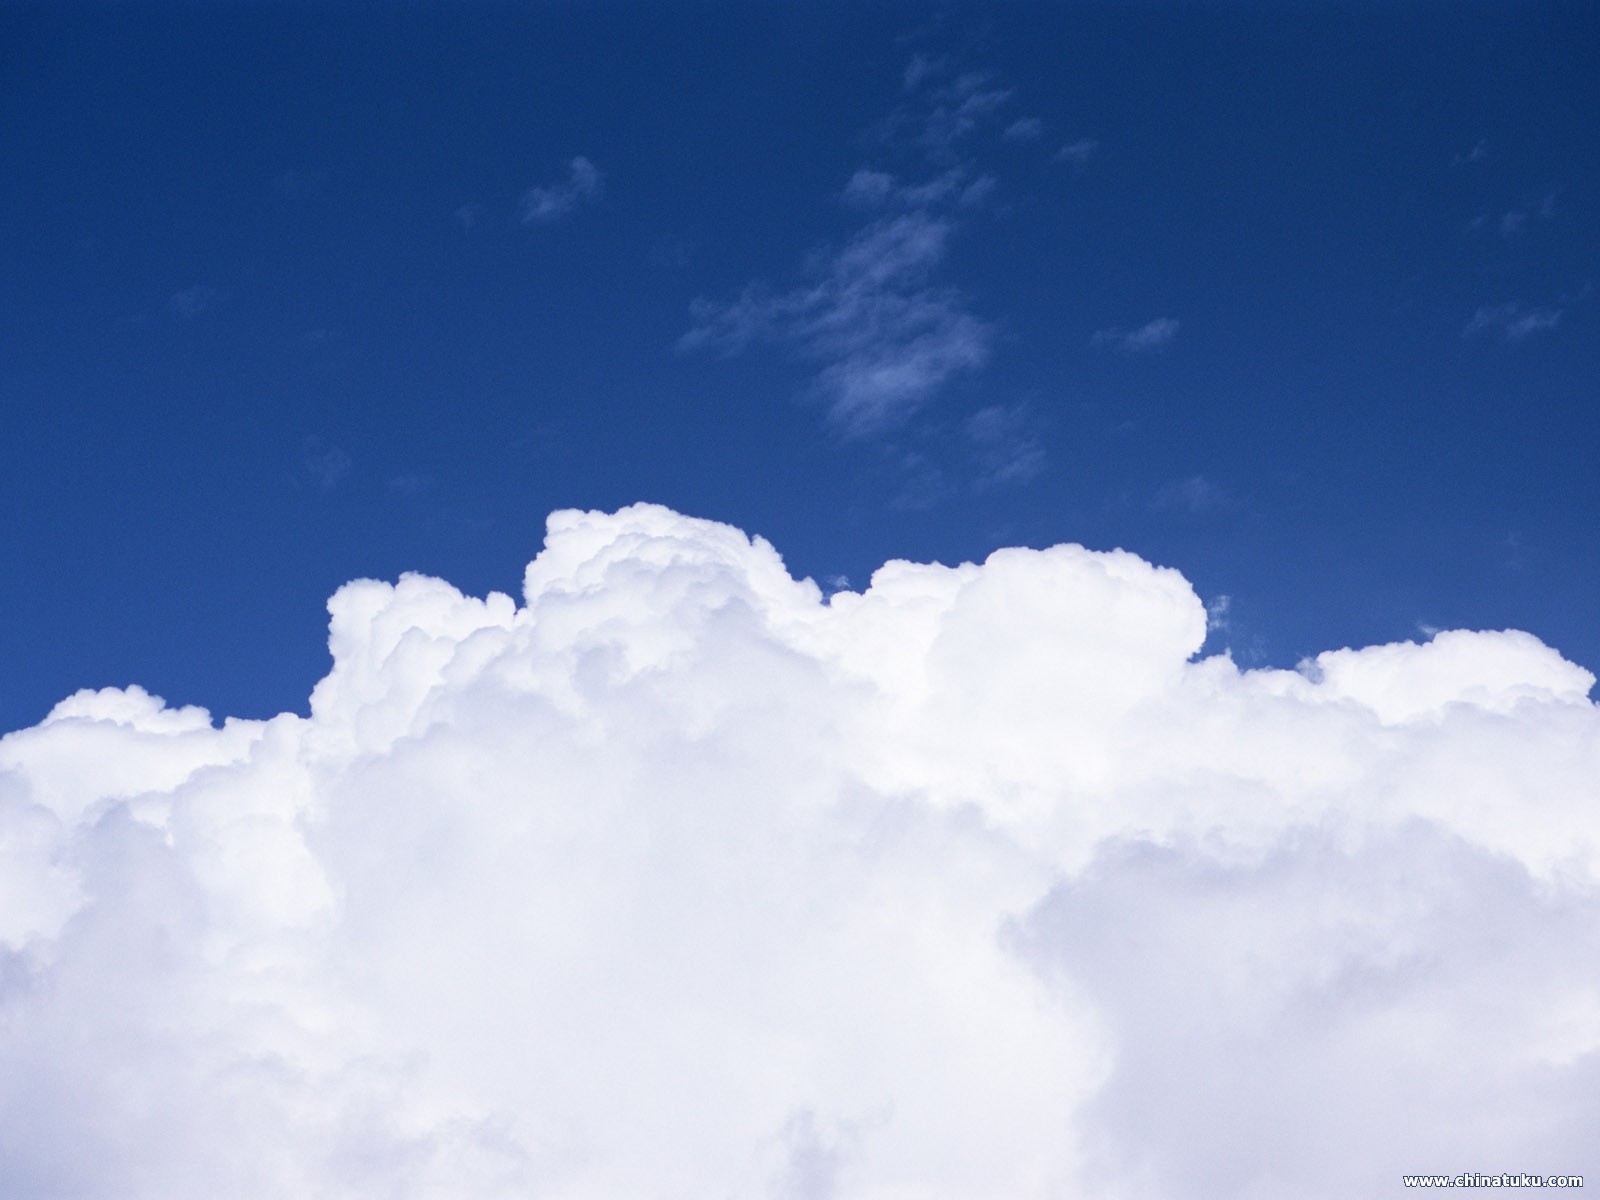 蓝天白云唯美风景图片桌面壁纸 - tt98图片网